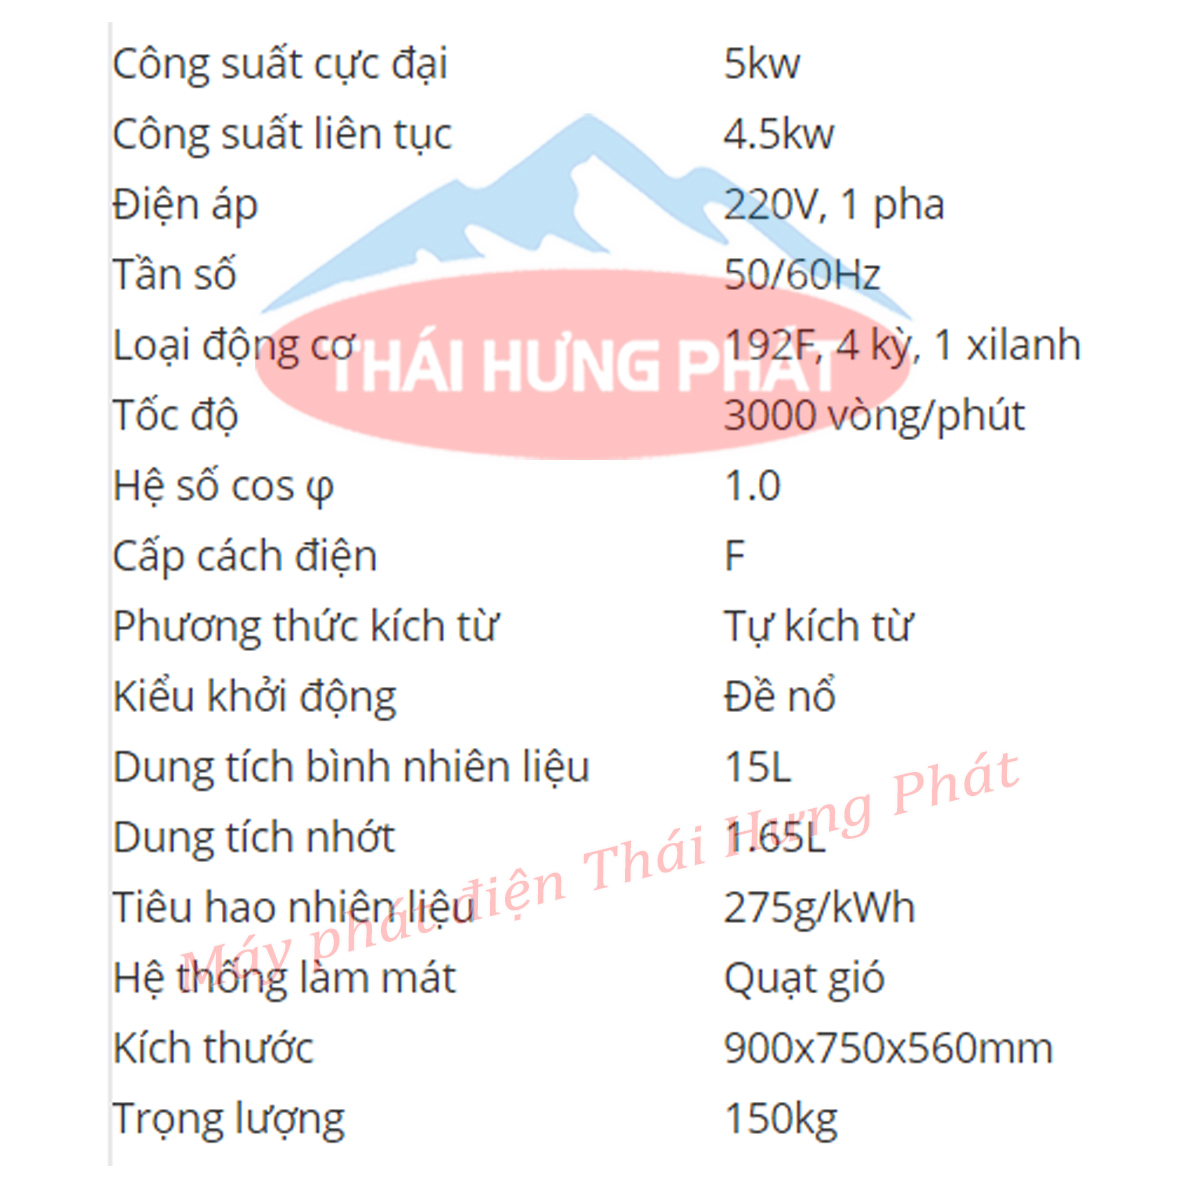 Máy Phát Điện Chạy Dầu Benly BL6800 (5kW)